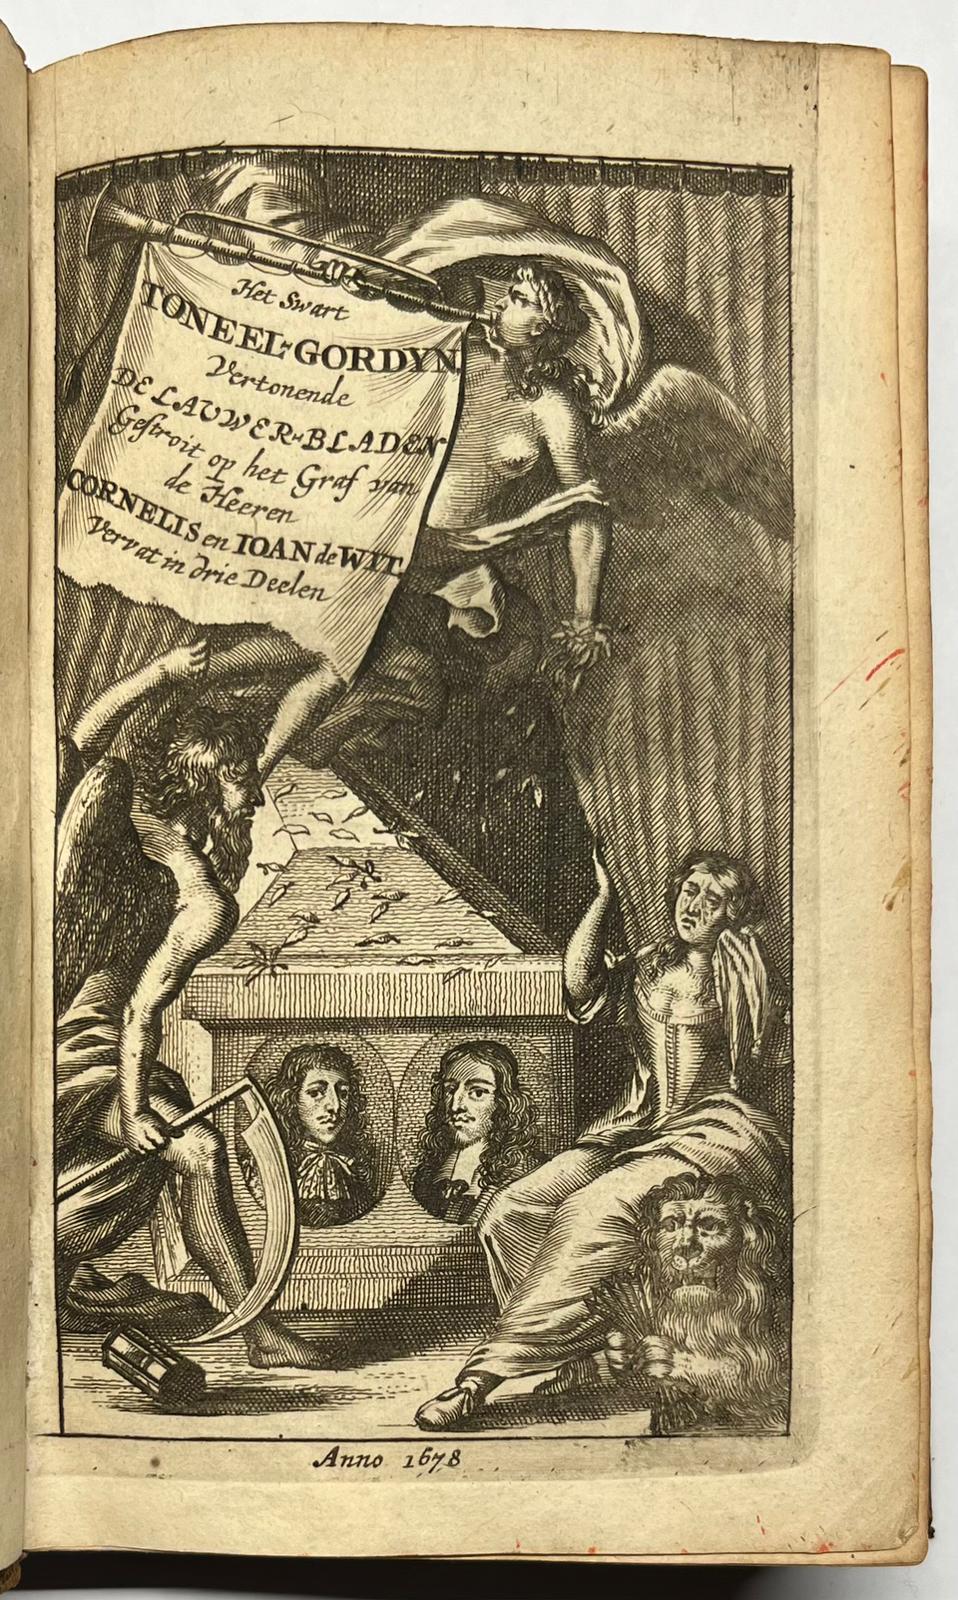 [Poetry, 1677-1678, De Witt] Het Swart Toneel-Gordyn, opgeschoven voor de Heeren Gebroederen Cornelis en Johan de Wit. [s.n.], [s.l.], 1677-1678, 3rd ed., 3 parts in 1 vol., (2), 96; (4), 92; (4), 92 pp.